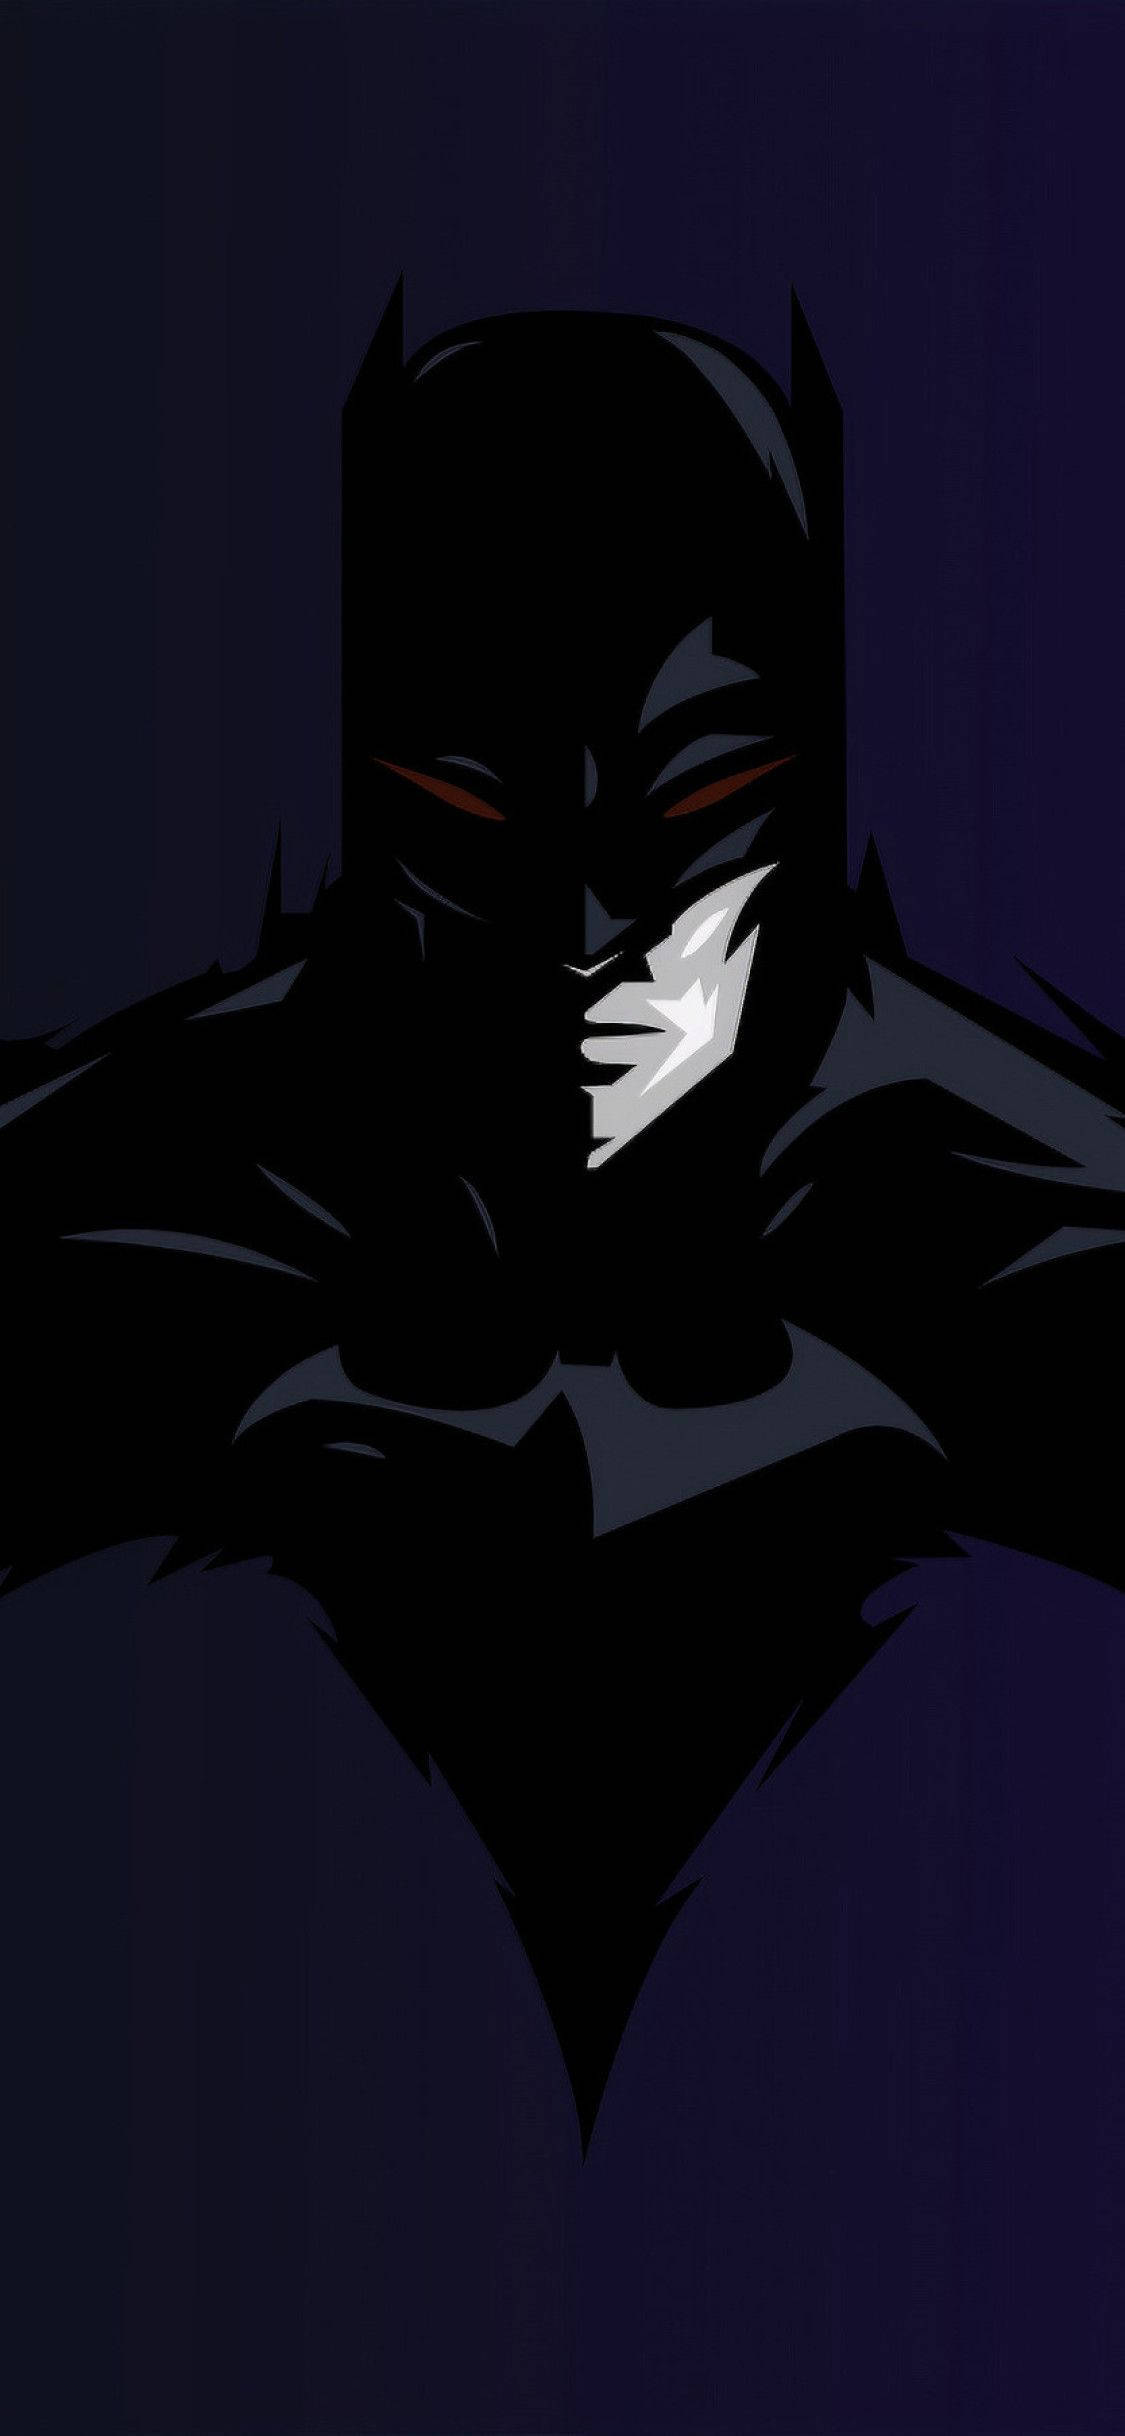 Batman Dark Knight Digital Drawing iPhone X Wallpaper